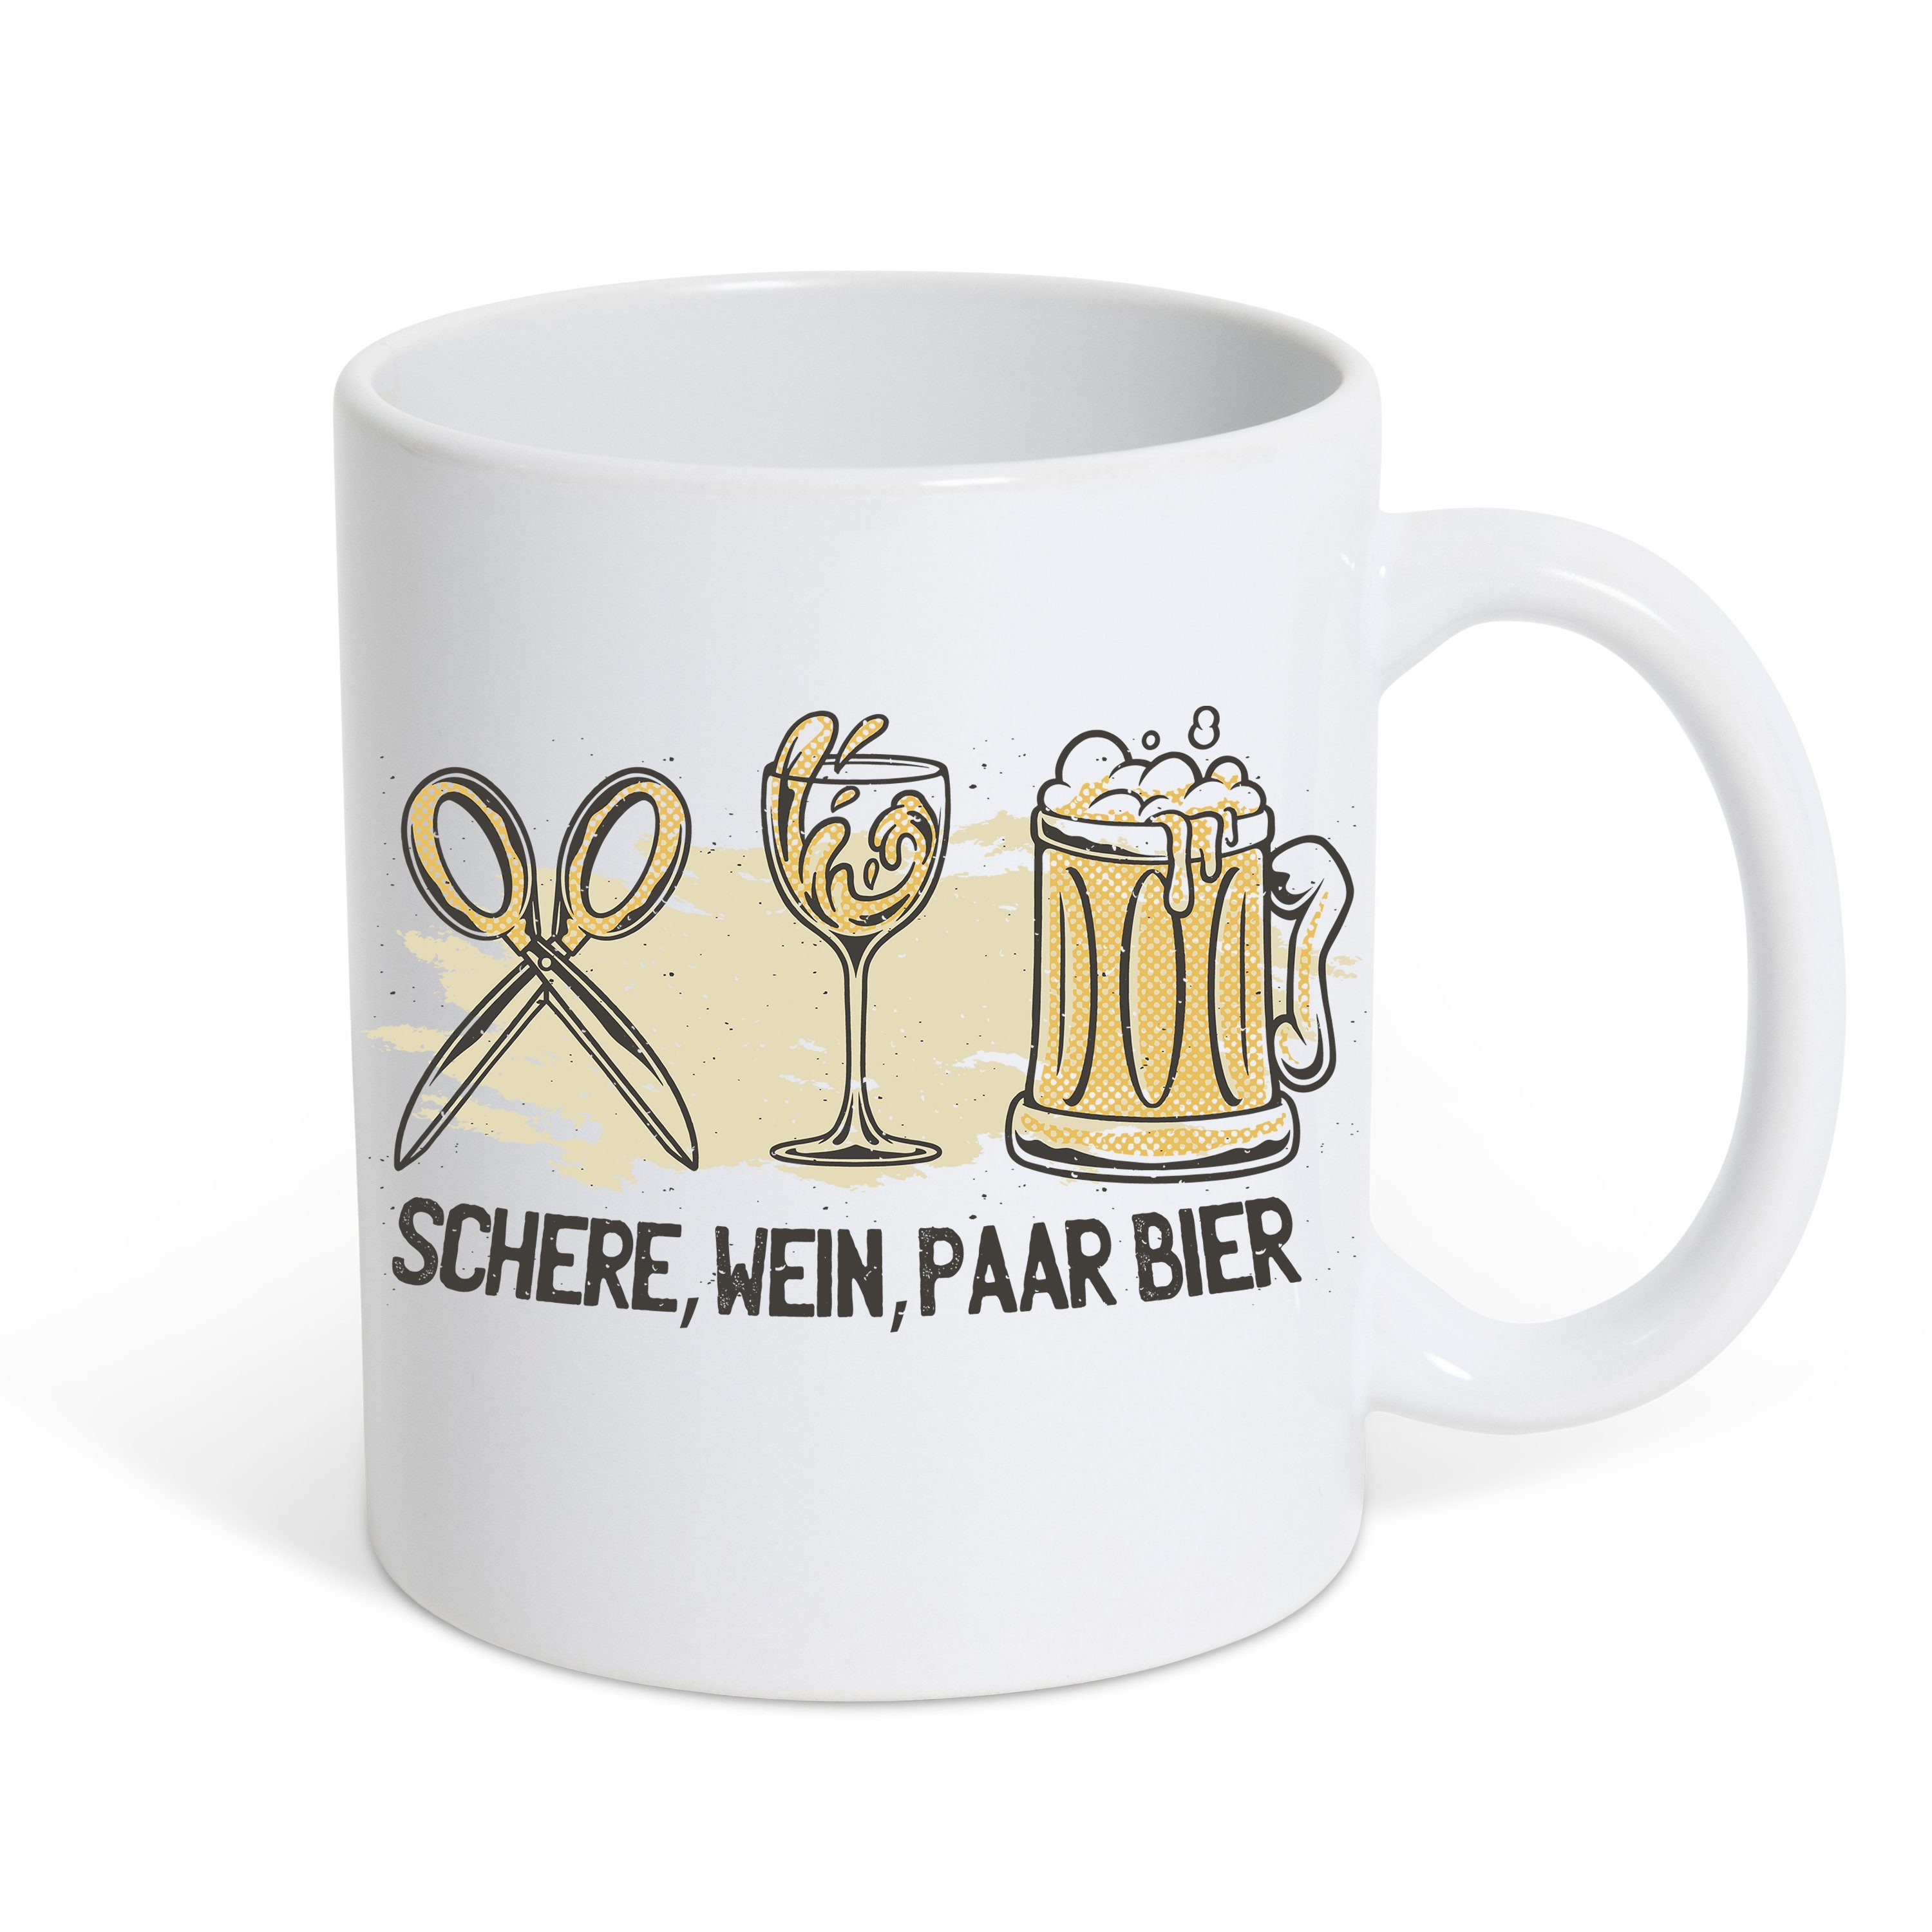 Youth Designz Tasse Schere Wein Paar Bier Kaffeetasse Geschemk, Keramik, mit lustigem Print Weiß